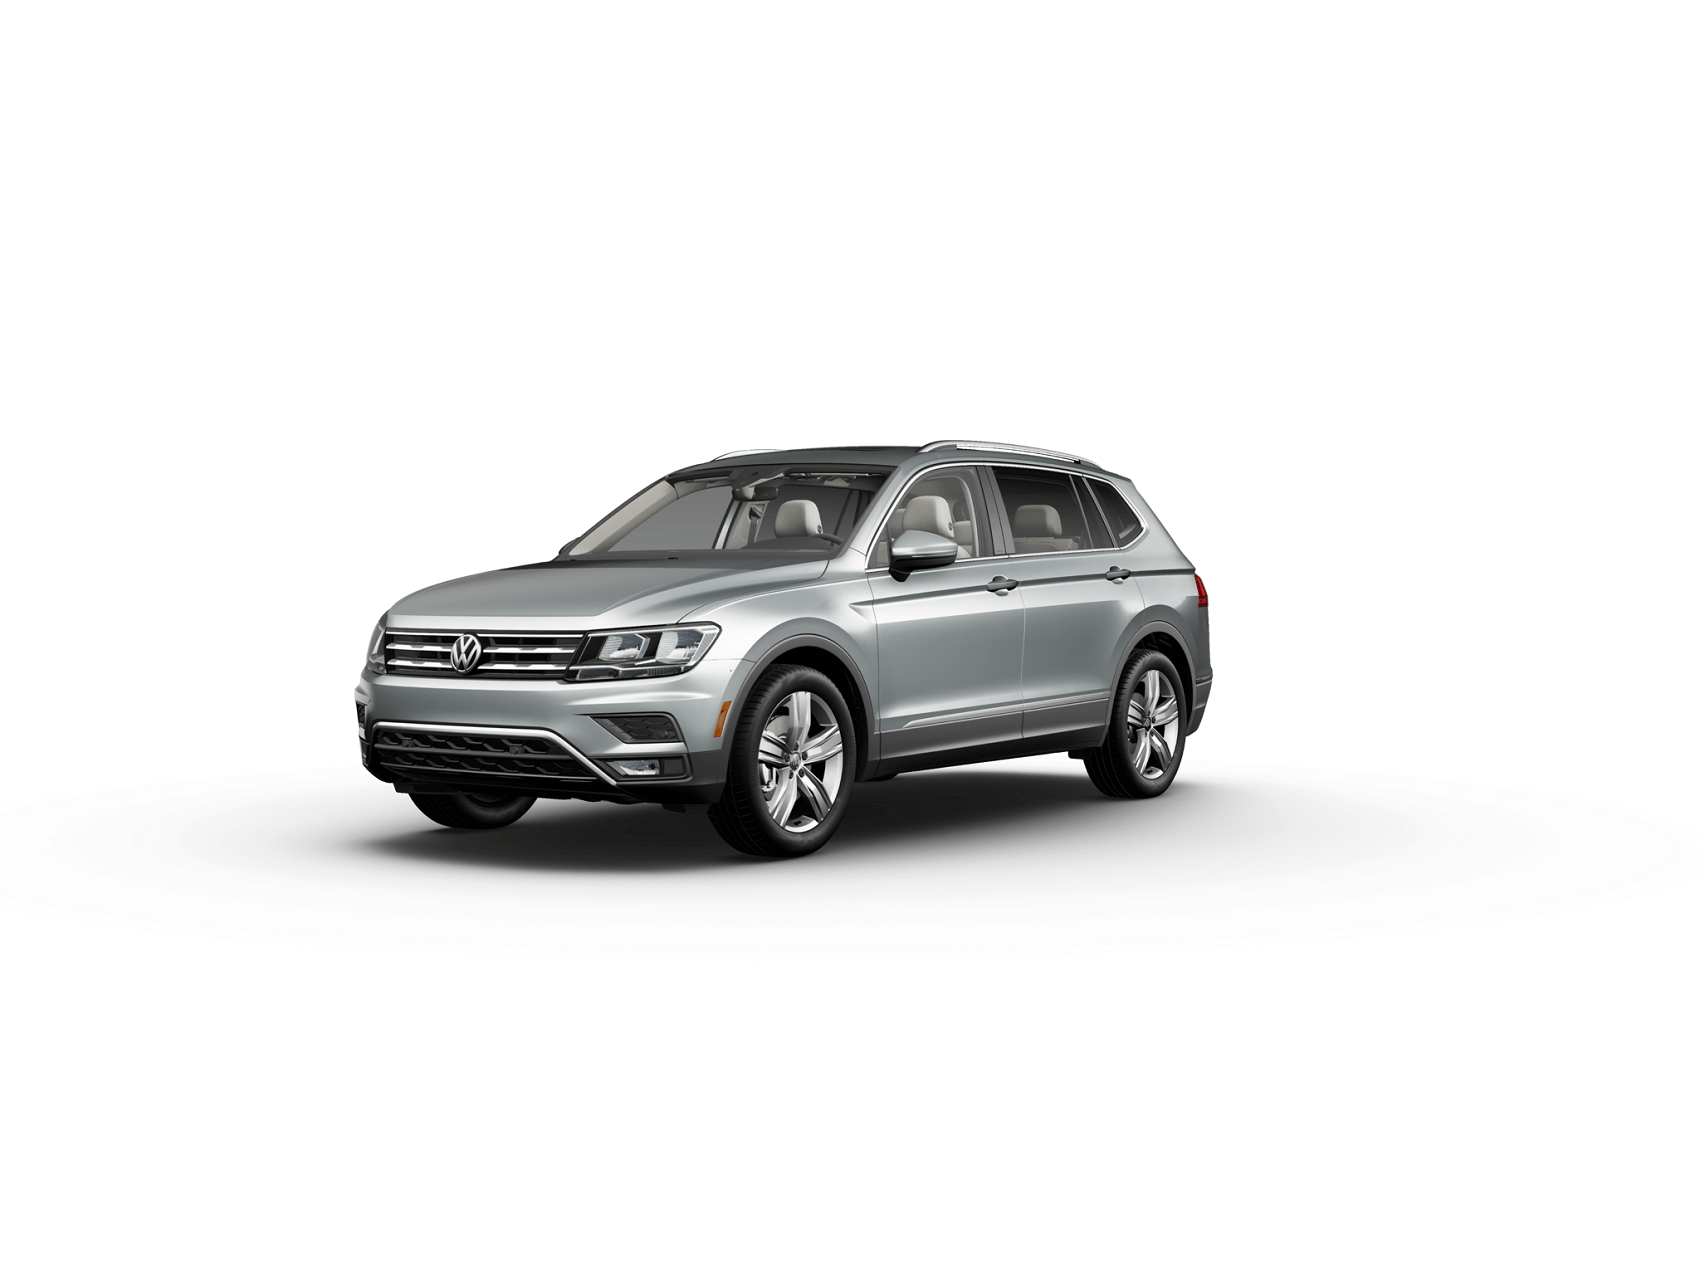 2021 Volkswagen Tiguan Review Avon IN
